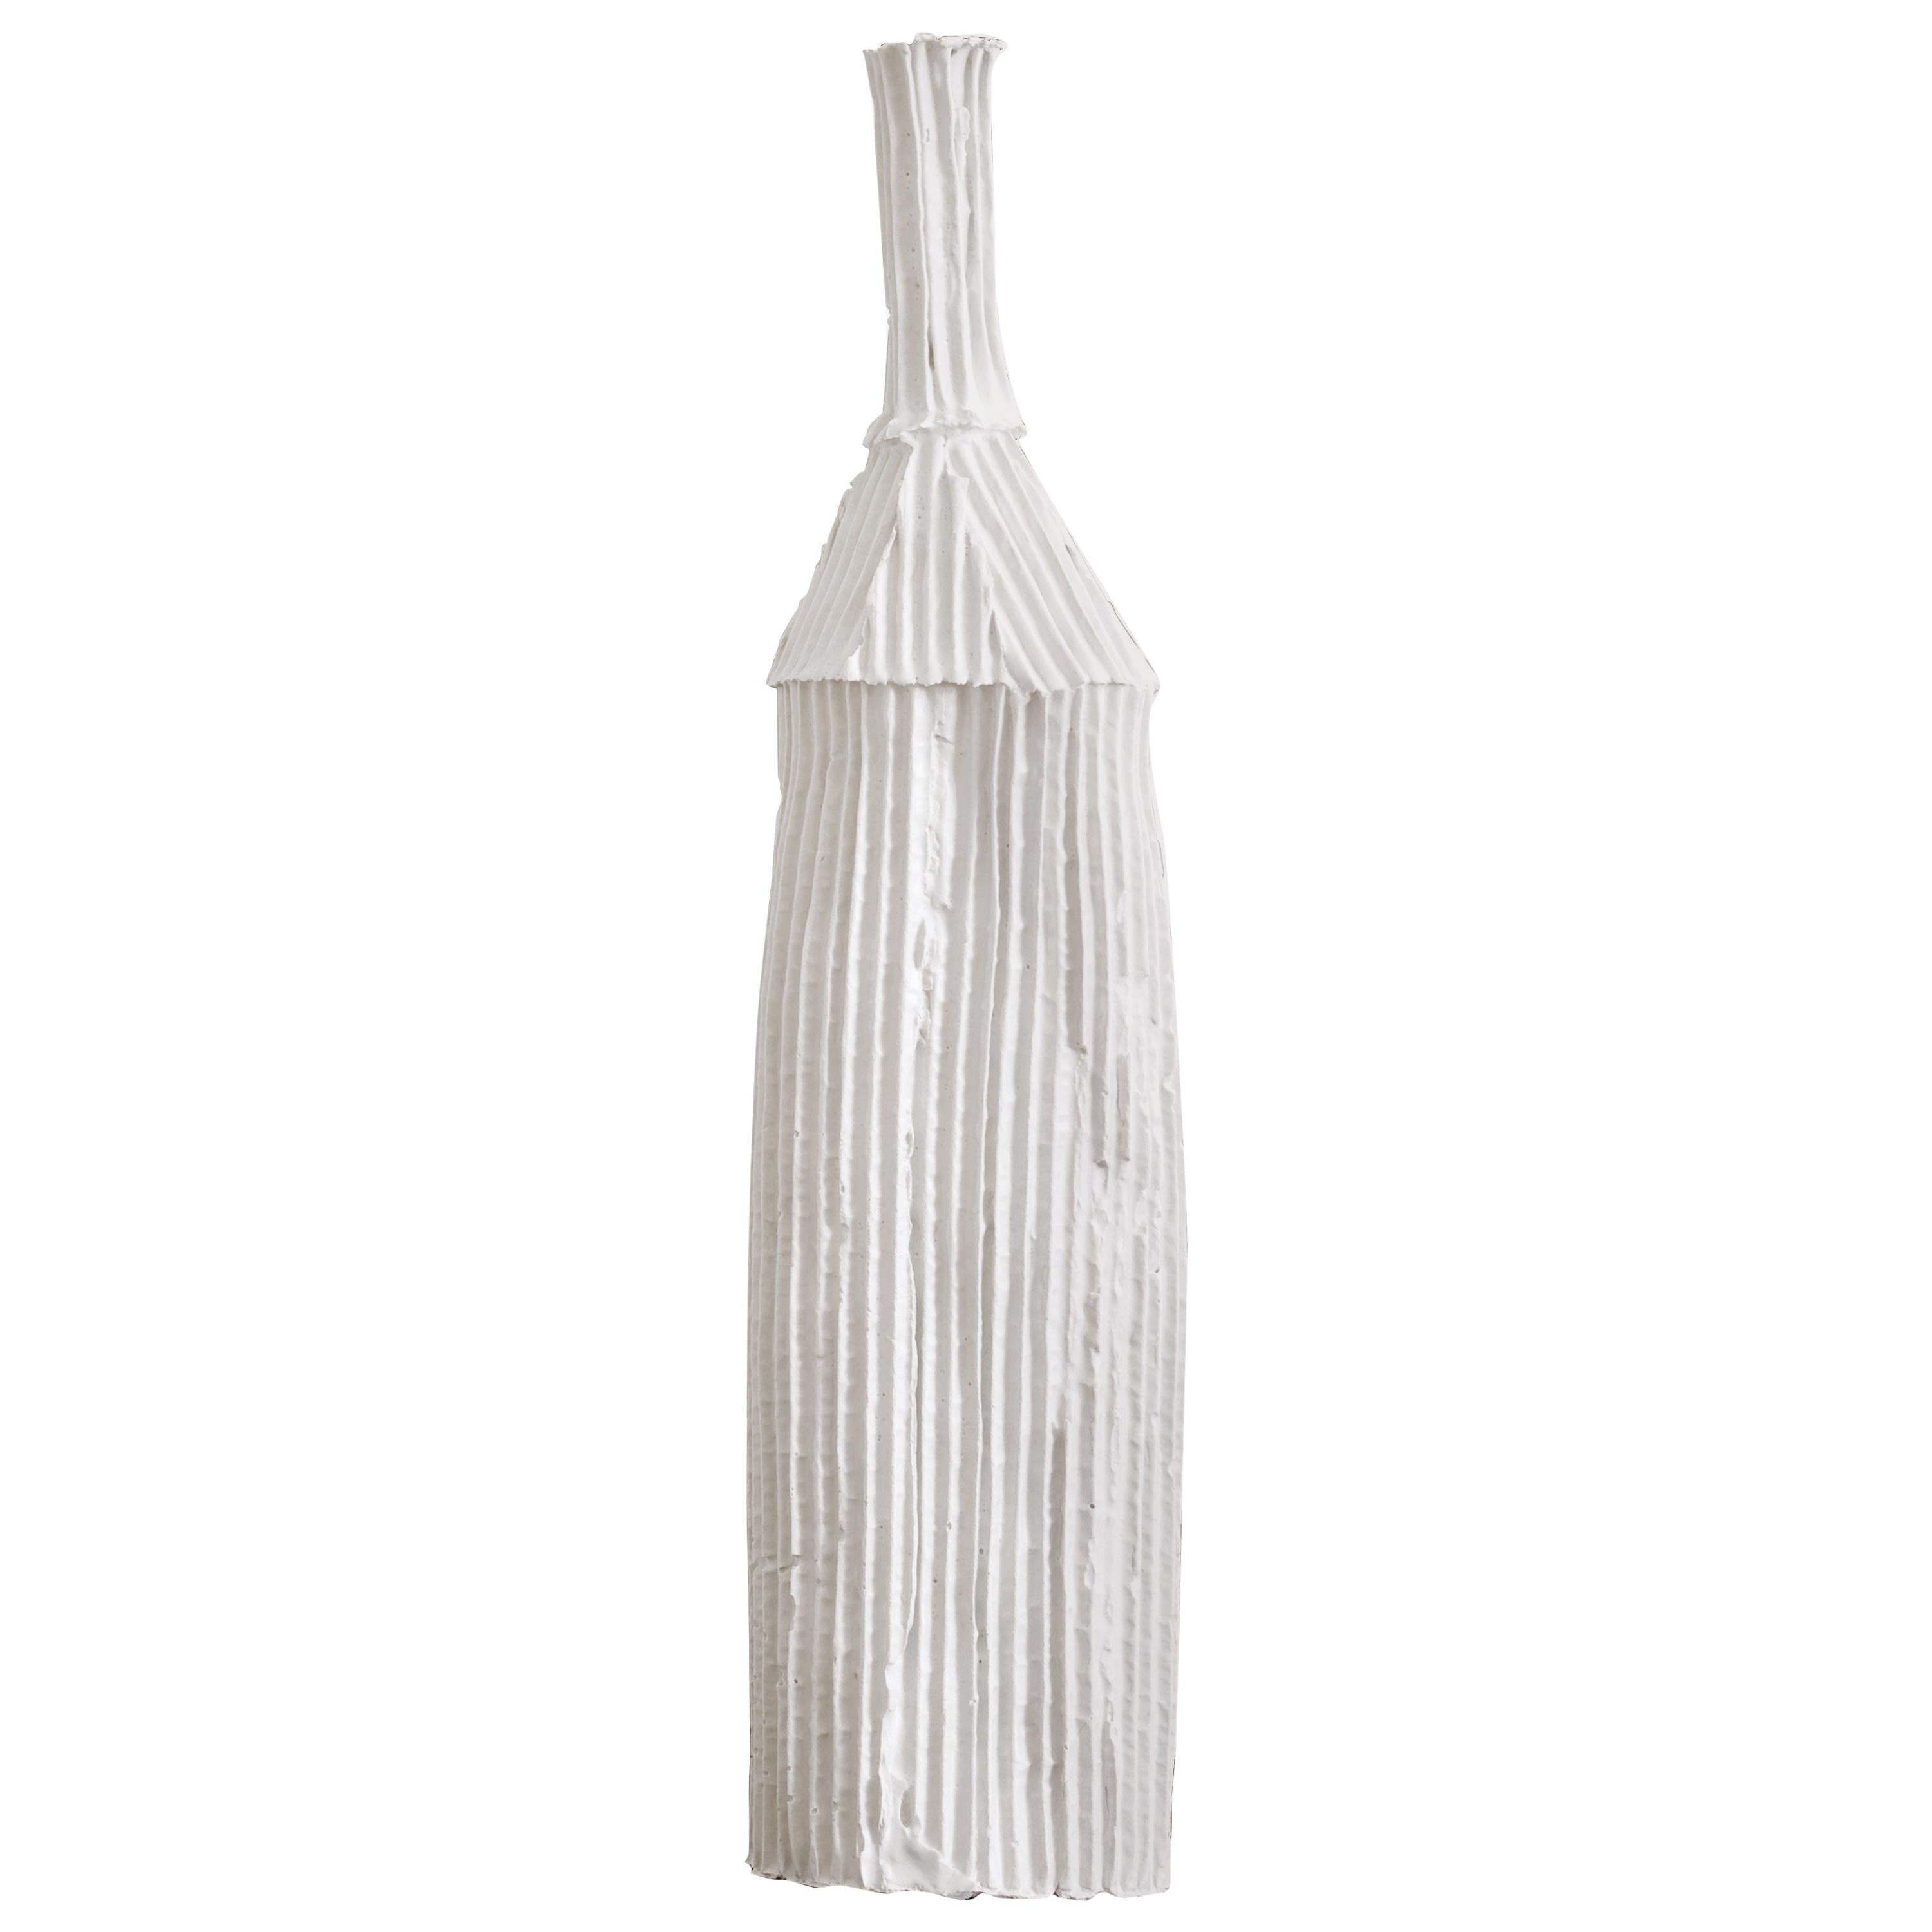 Contemporary Ceramic Cartocci Texture White Dekorative Flasche